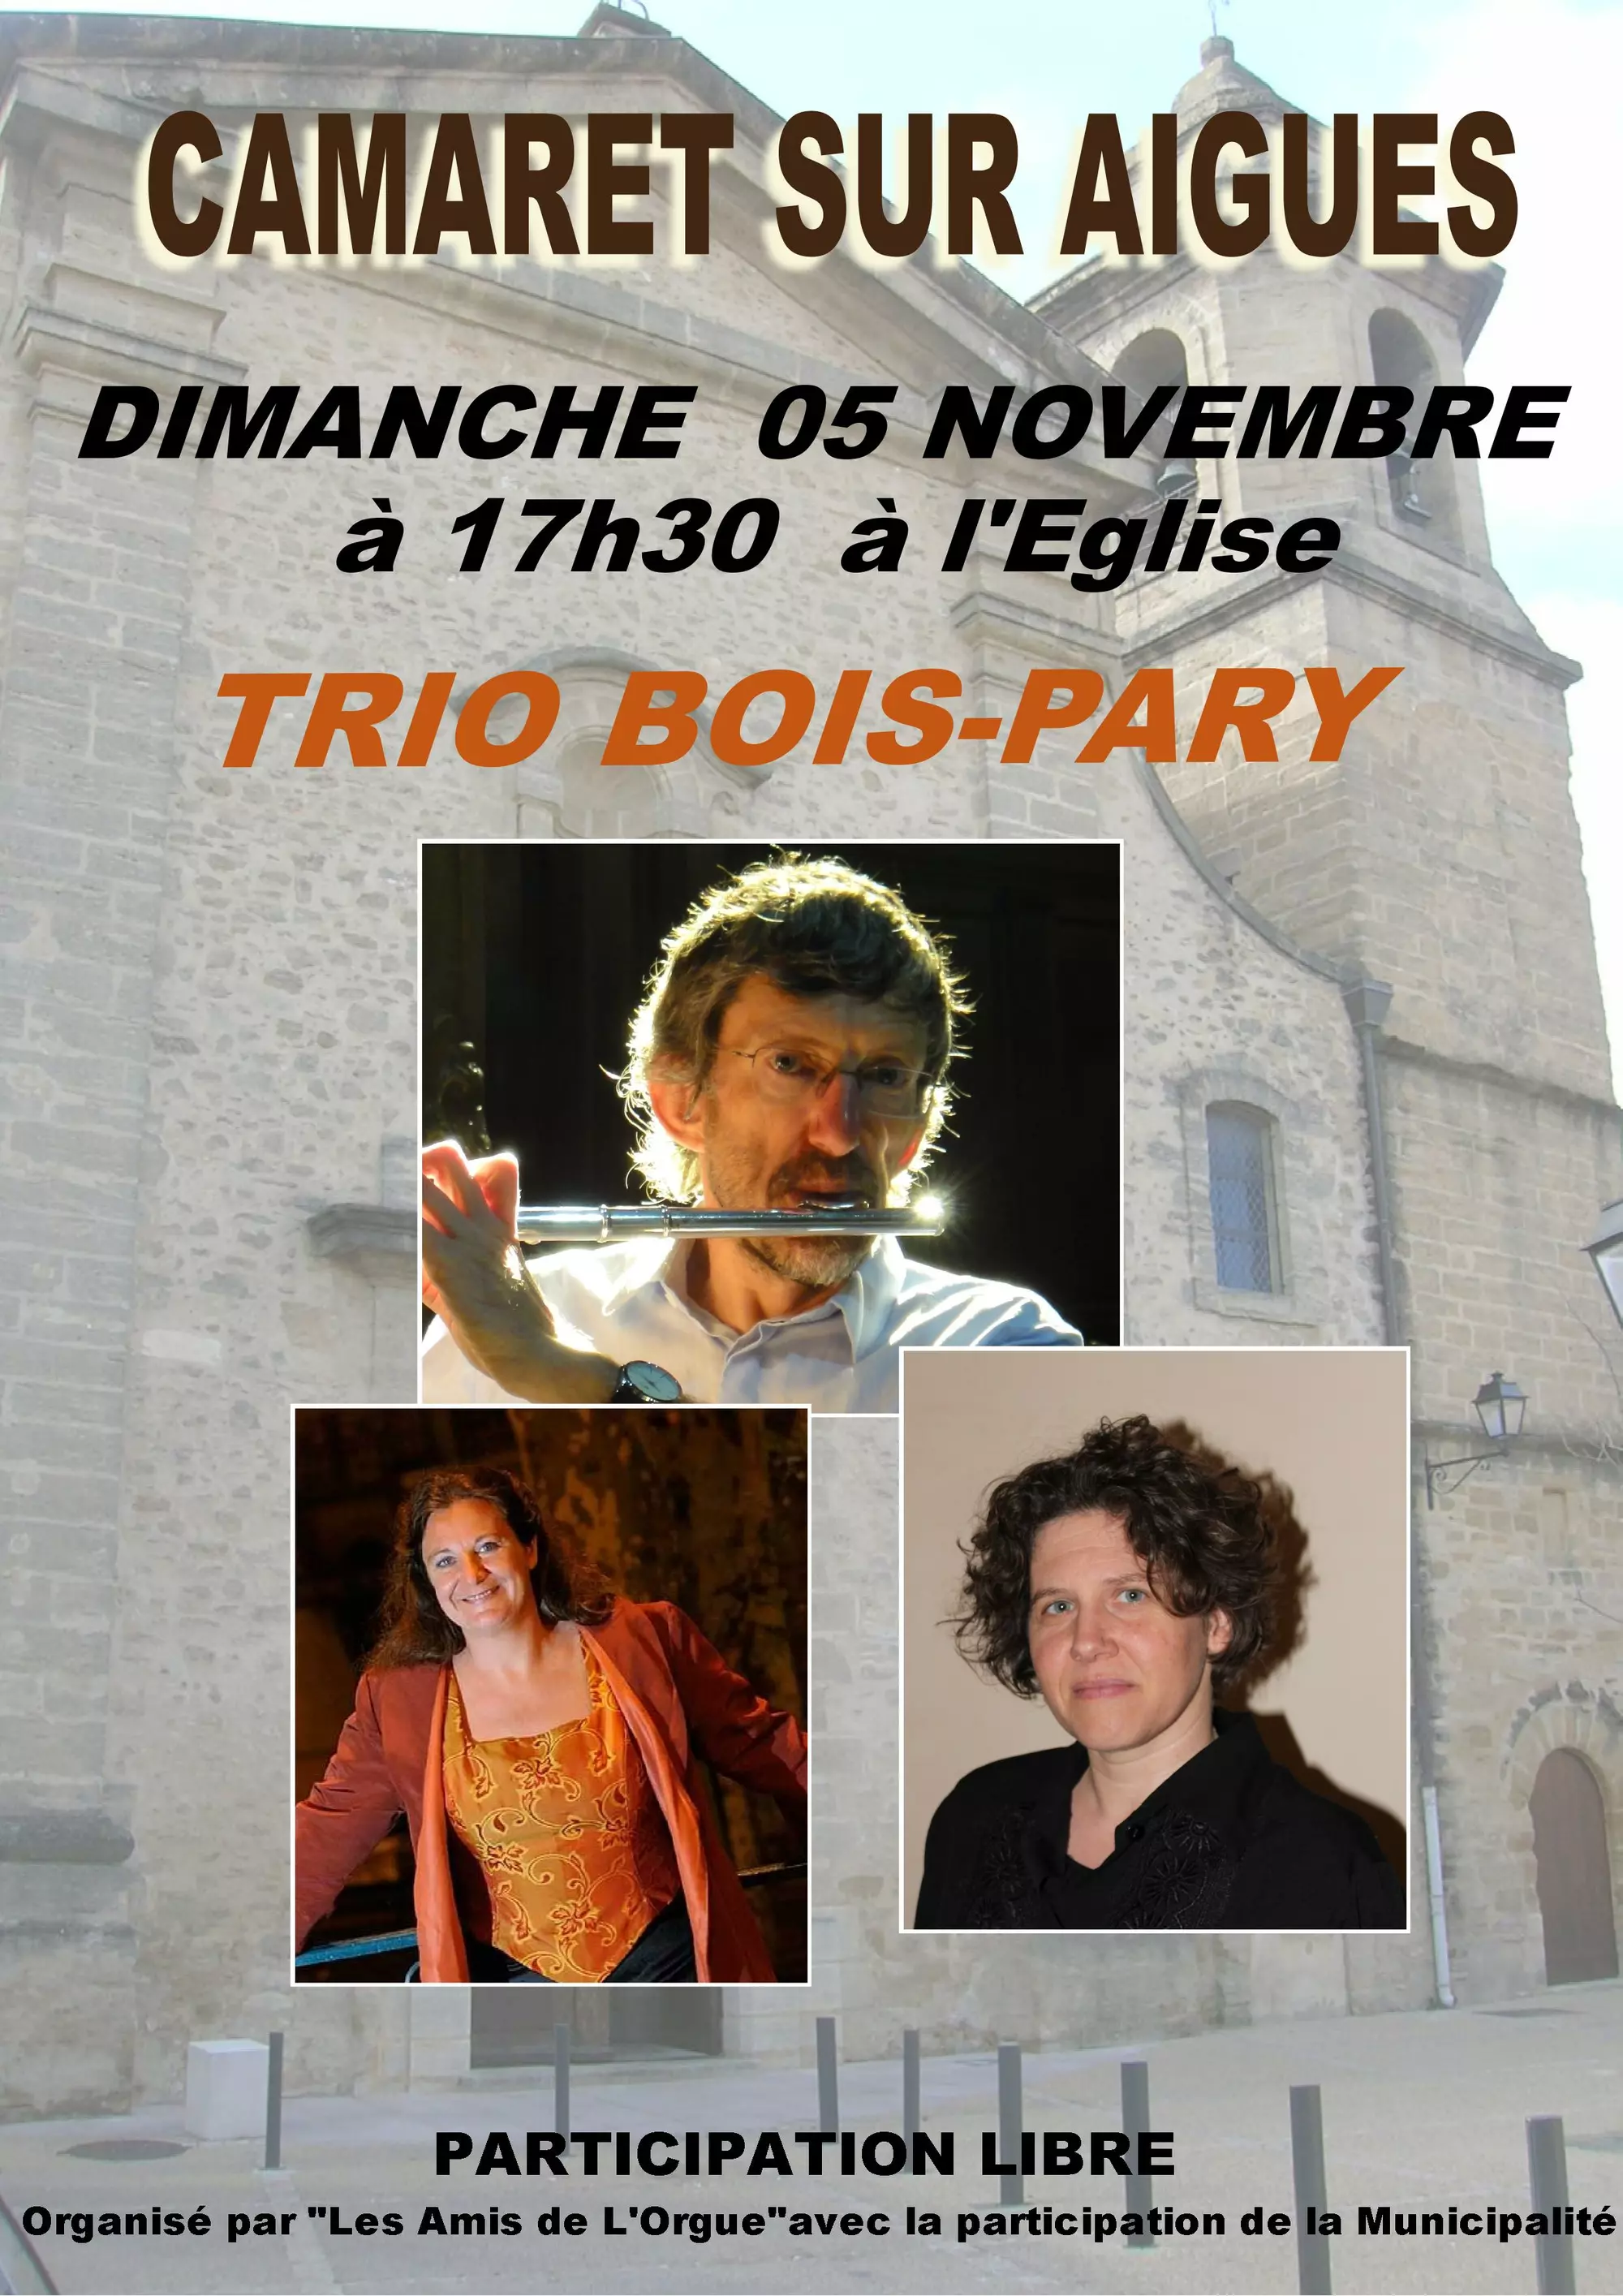 Concert organisé par les Amis de l'Orgue le dimanche 5 novembre à 17h30 à l'église Saint Andéol avec le « Trio Bois-Pary » (Sophie Bois, Thierry Bois et Béatrice Pary)